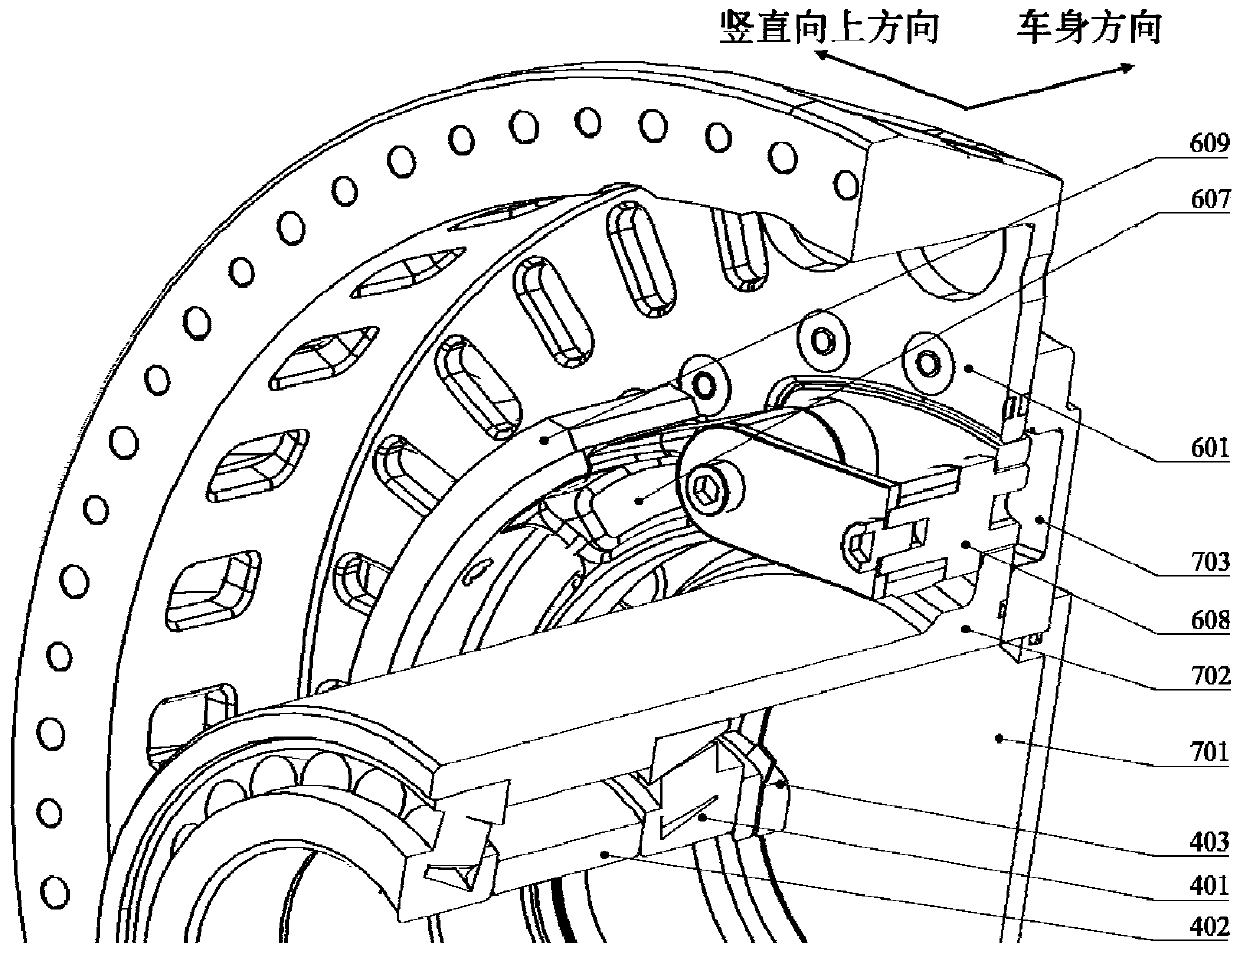 Electric wheel assembly adopting drum brake